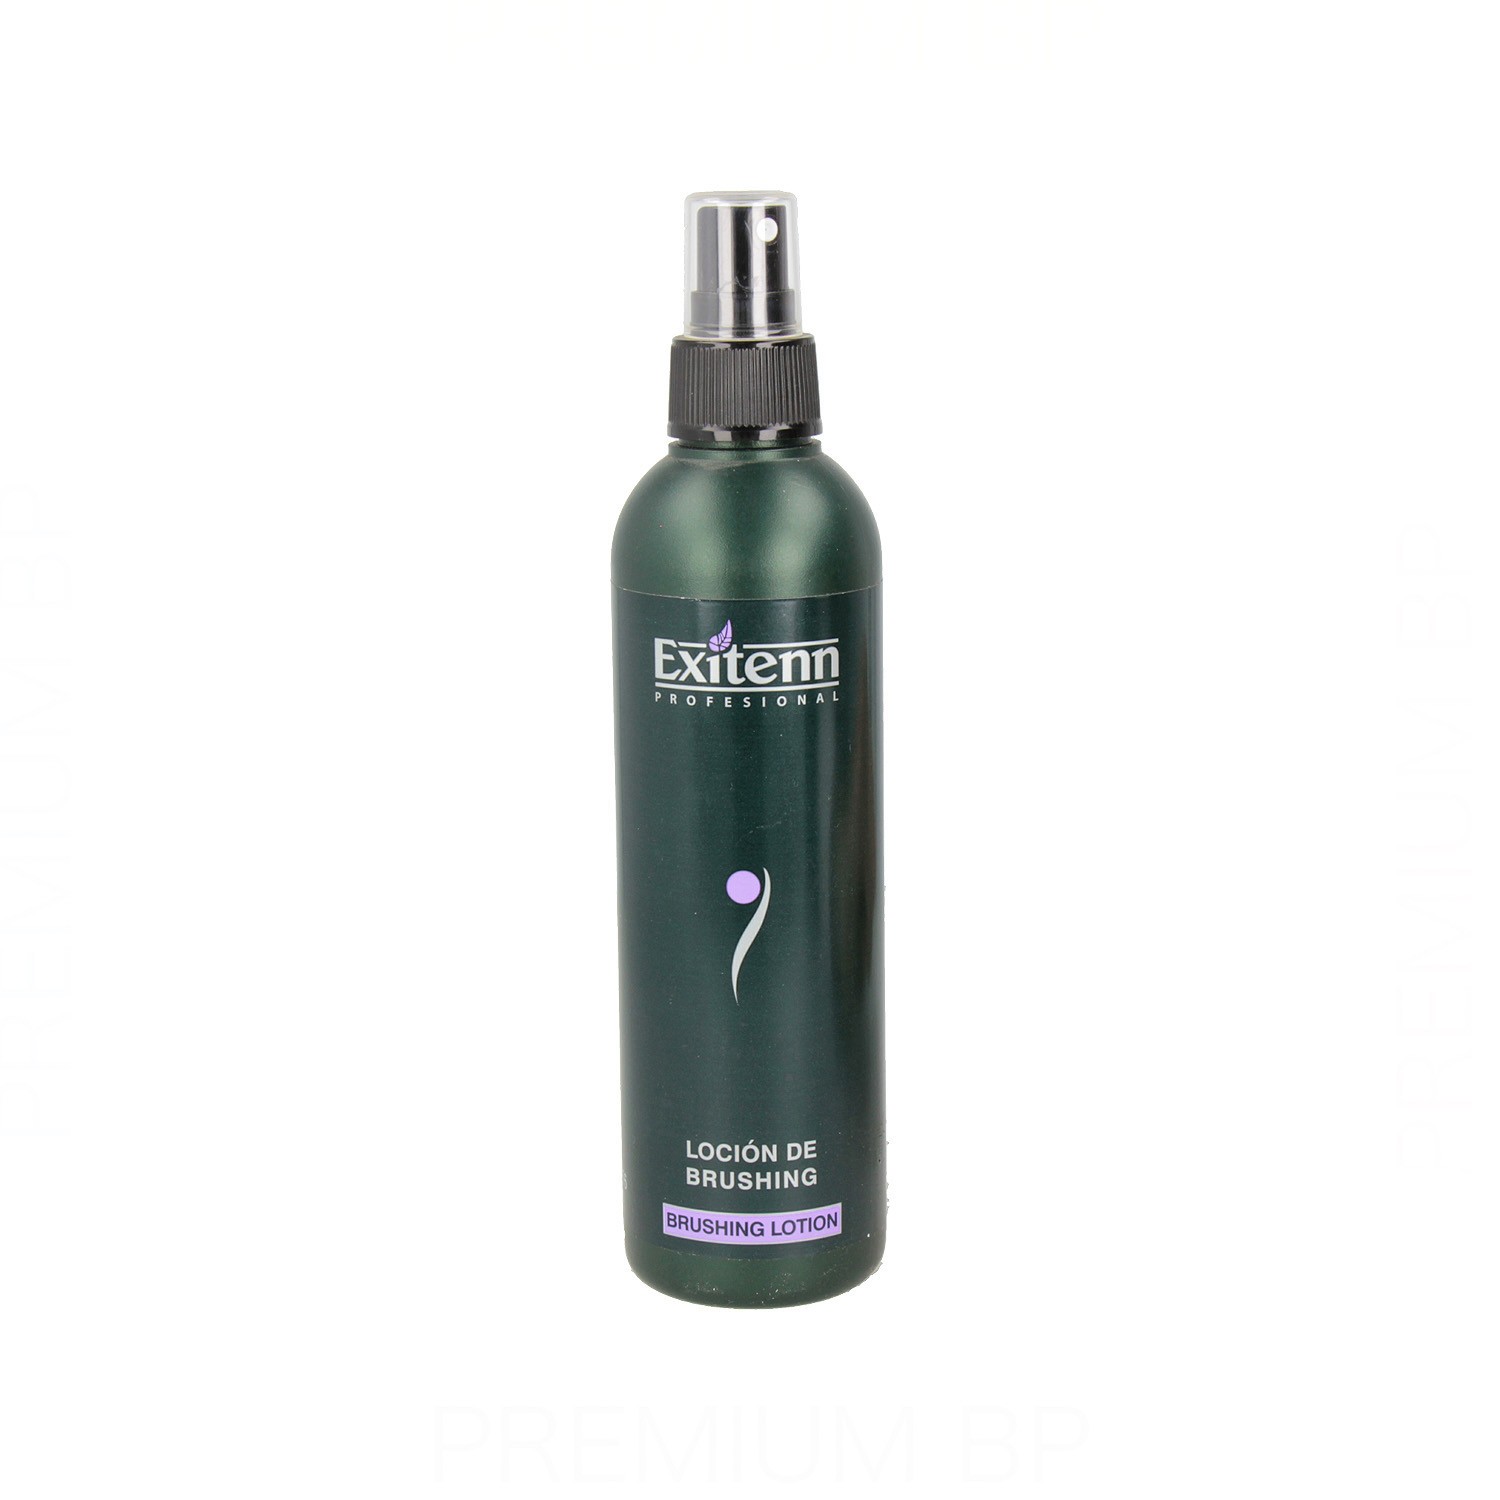 Exitenn - Exitenn loción de brushing 250 ml, spray para el método brushing con secador. Belleza y cuidado de tu cabello y tu piel con Exitenn.